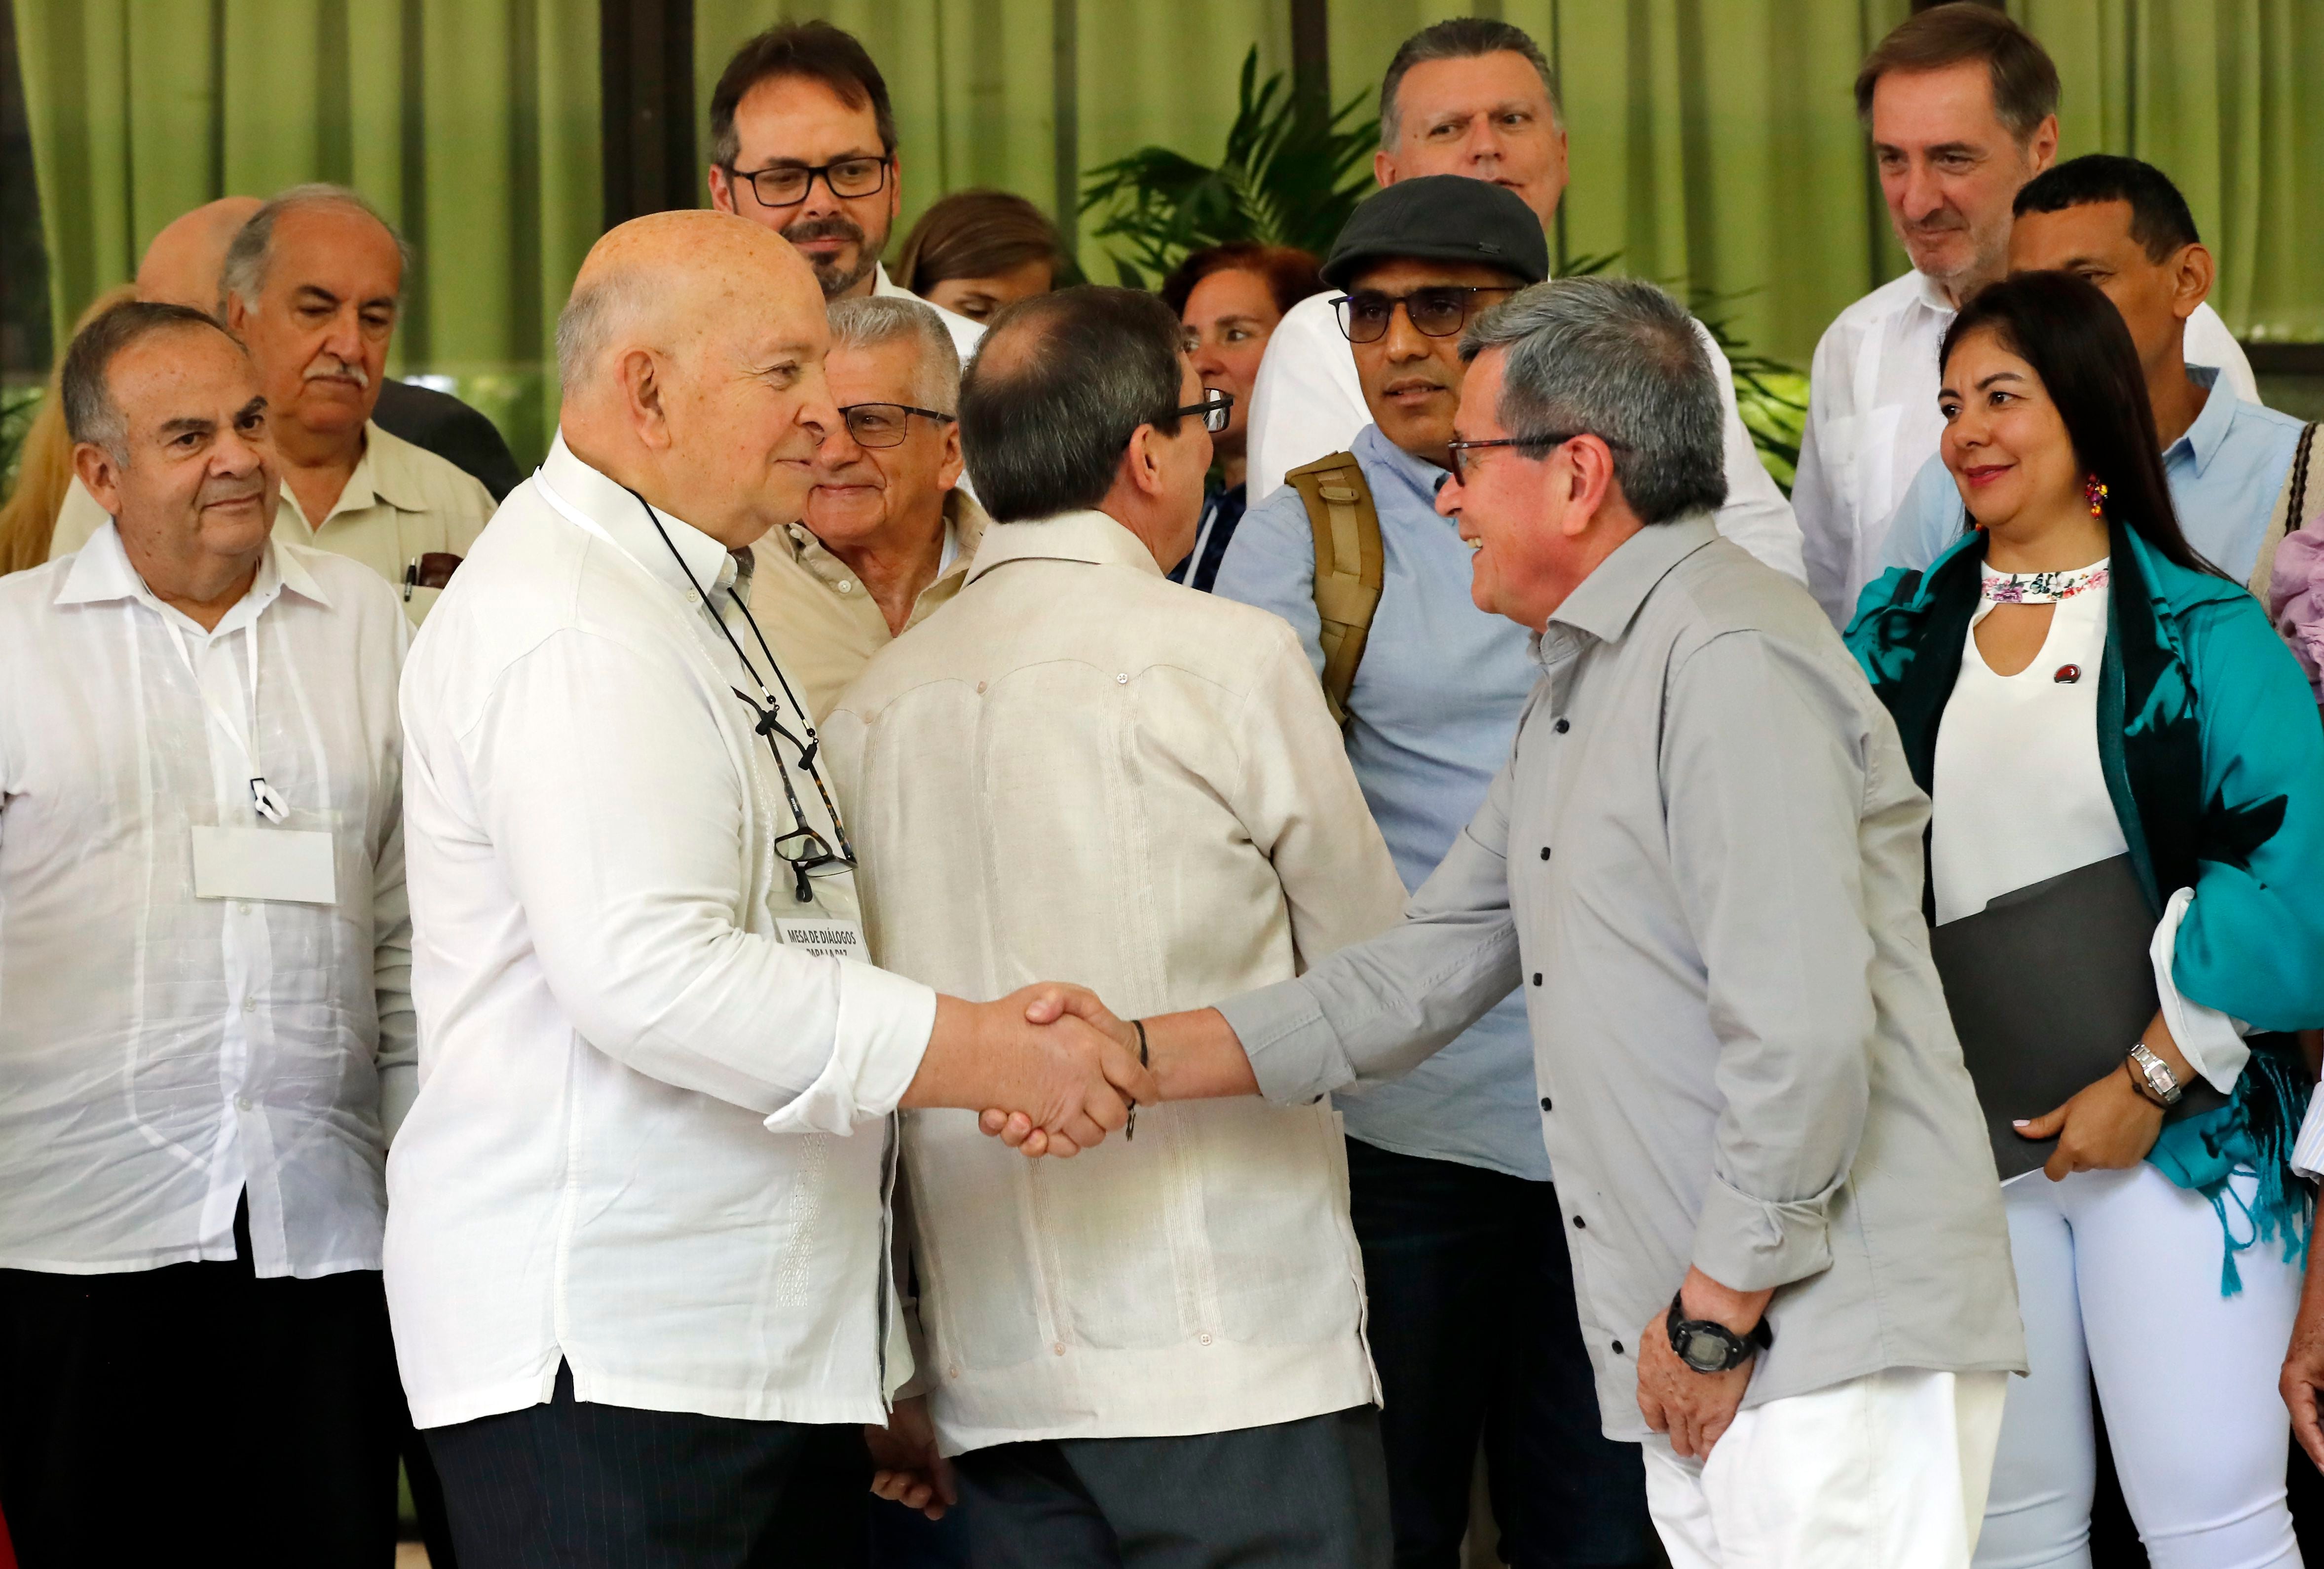 El Gobierno nacional y el ELN se reunieron durante tres días en La Habana (Cuba) para destrabar el proceso de paz - crédito Ernesto Mastrascusa/EFE